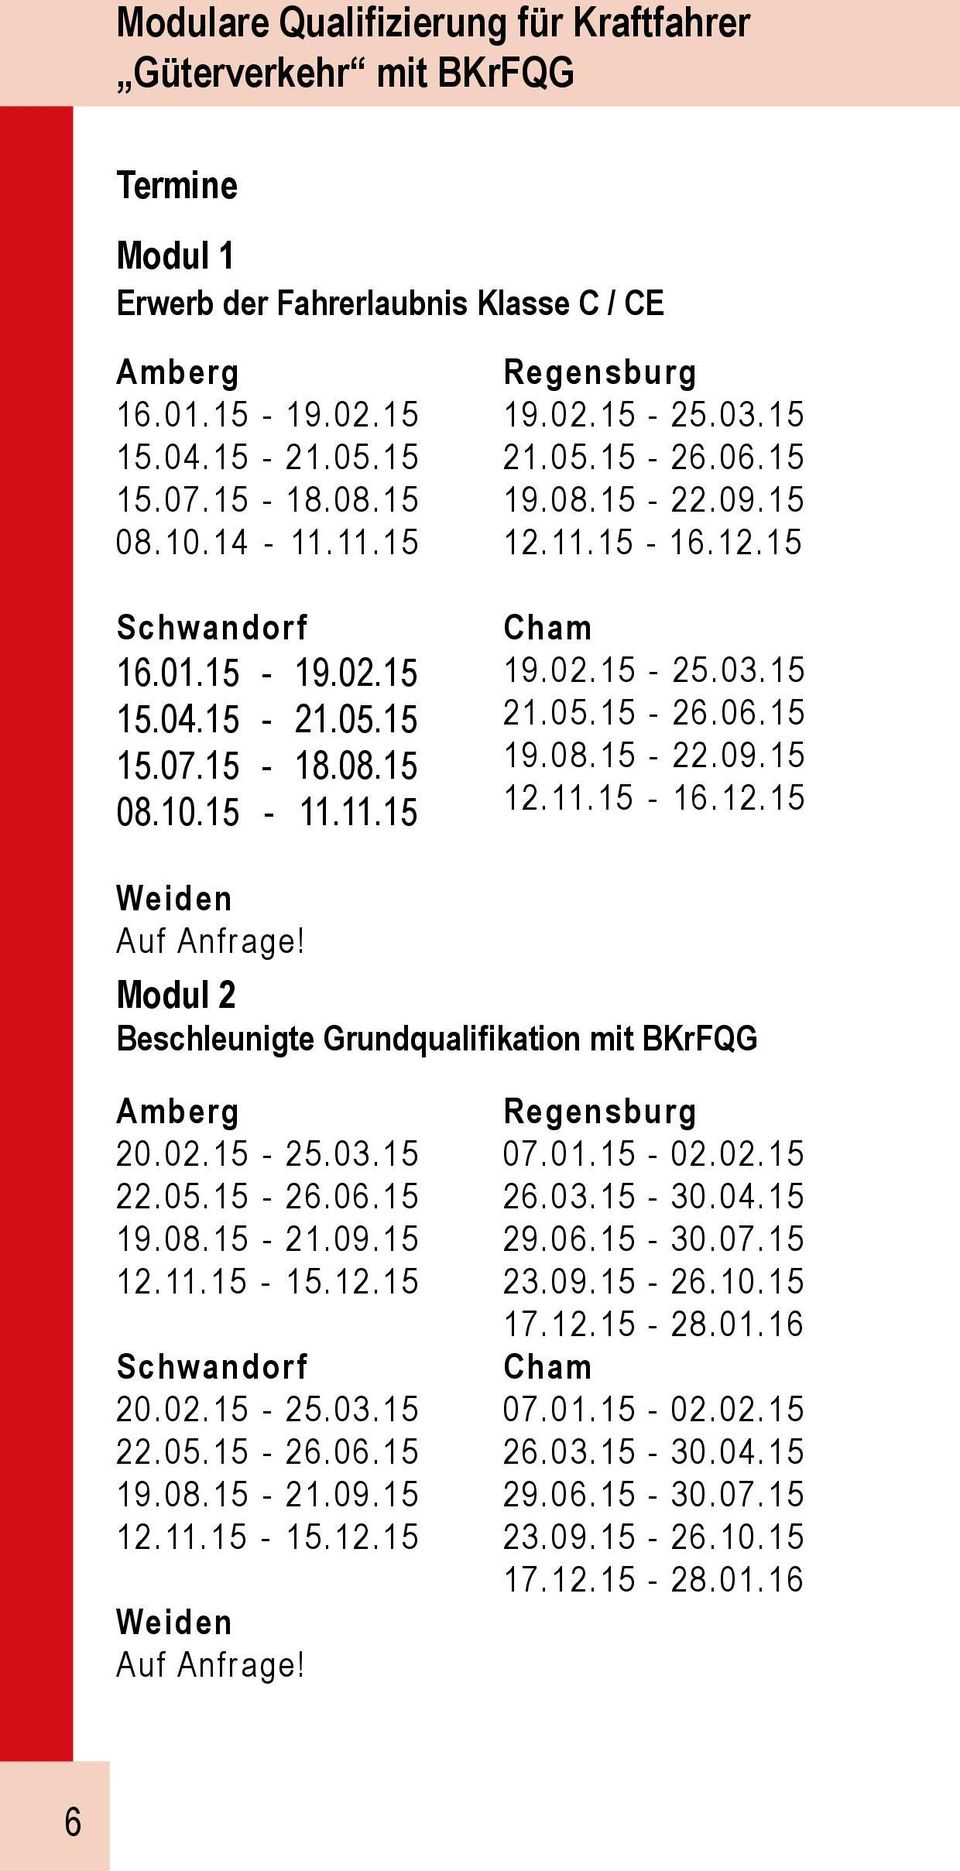 Modul 2 Beschleunigte Grundqualifikation mit BKrFQG Amberg 20.02.15-25.03.15 22.05.15-26.06.15 19.08.15-21.09.15 12.11.15-15.12.15 Schwandorf 20.02.15-25.03.15 22.05.15-26.06.15 19.08.15-21.09.15 12.11.15-15.12.15 Weiden Auf Anfrage!